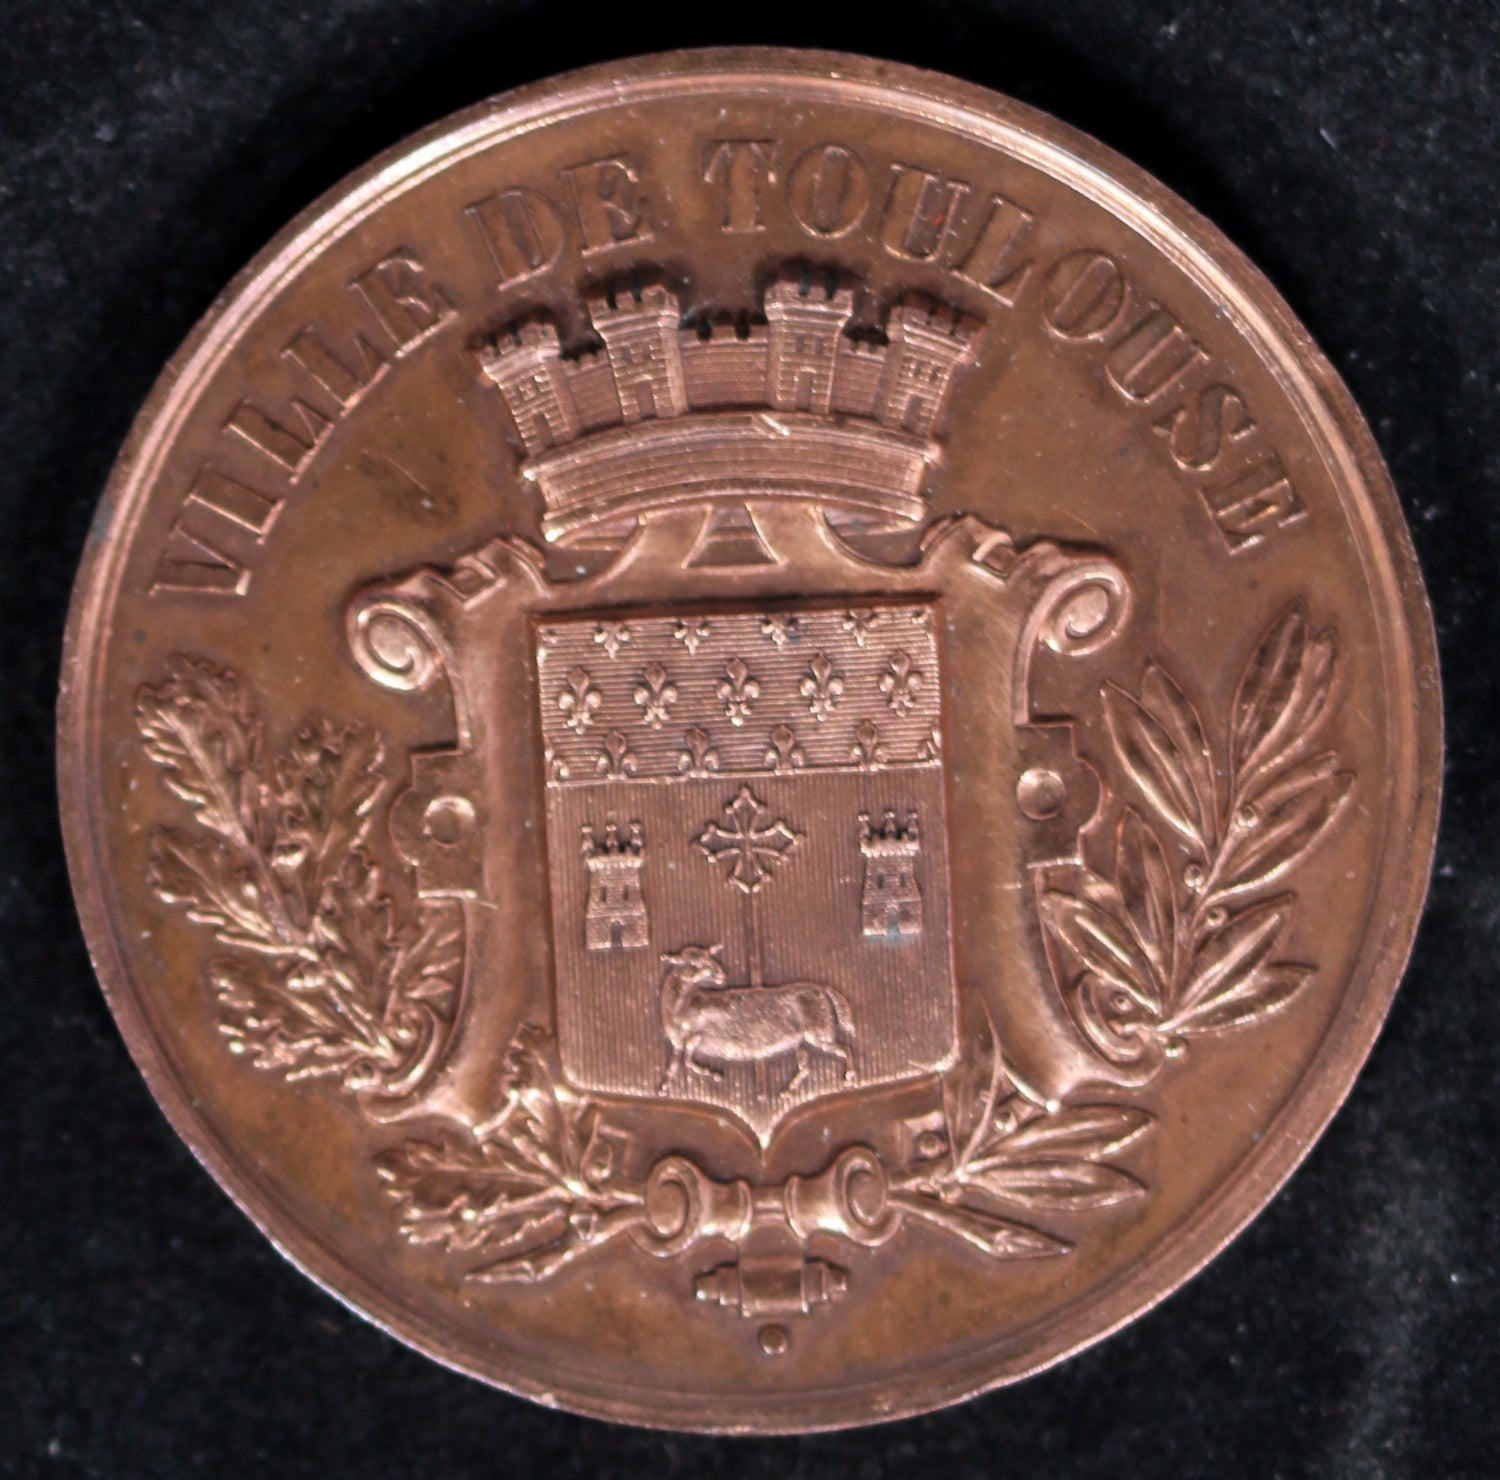 1900 medaille Conservatoire de musique de Toulouse